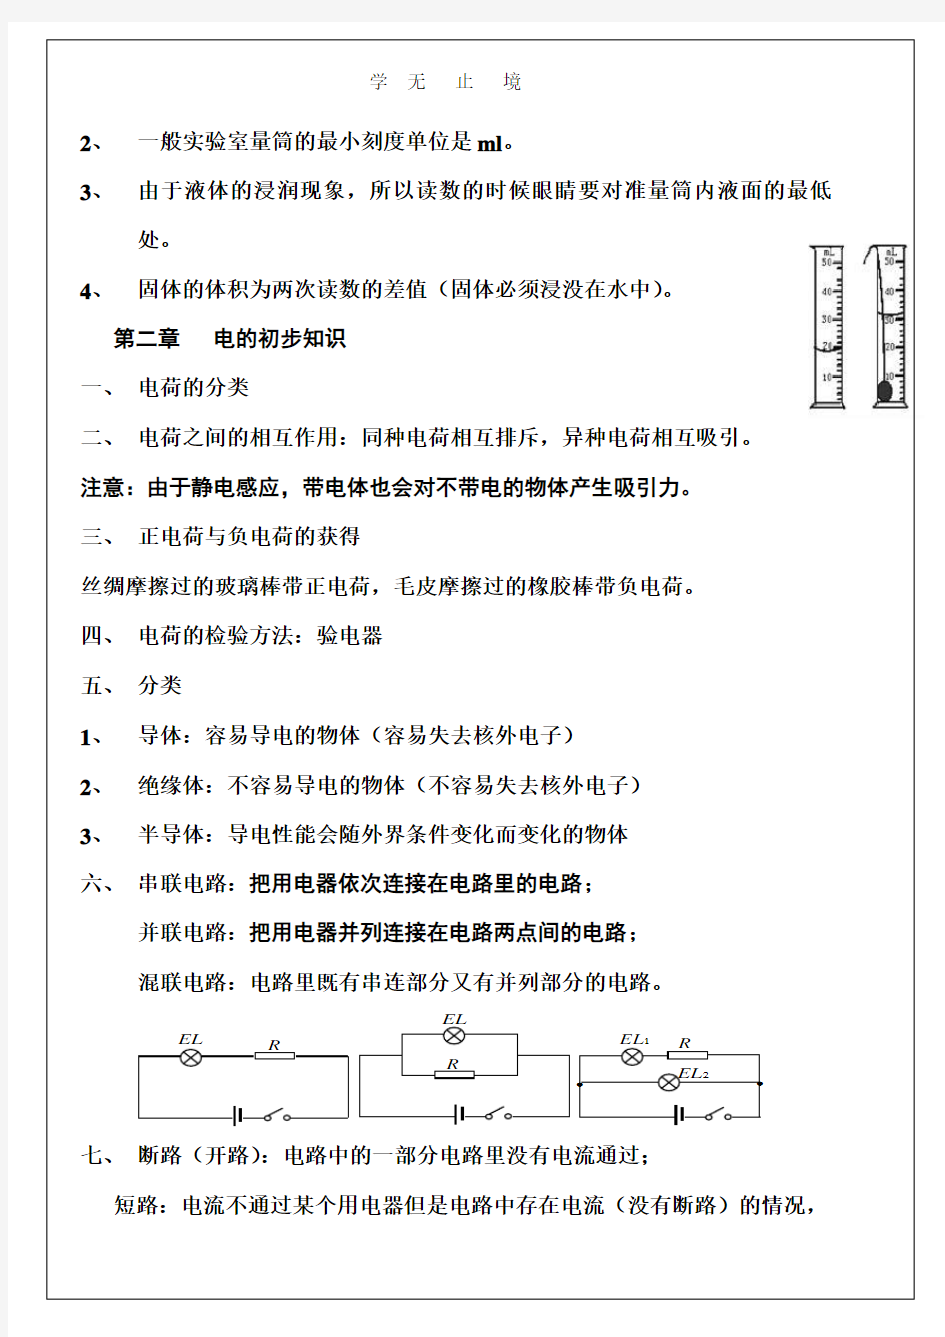 初中物理总复习资料.pdf